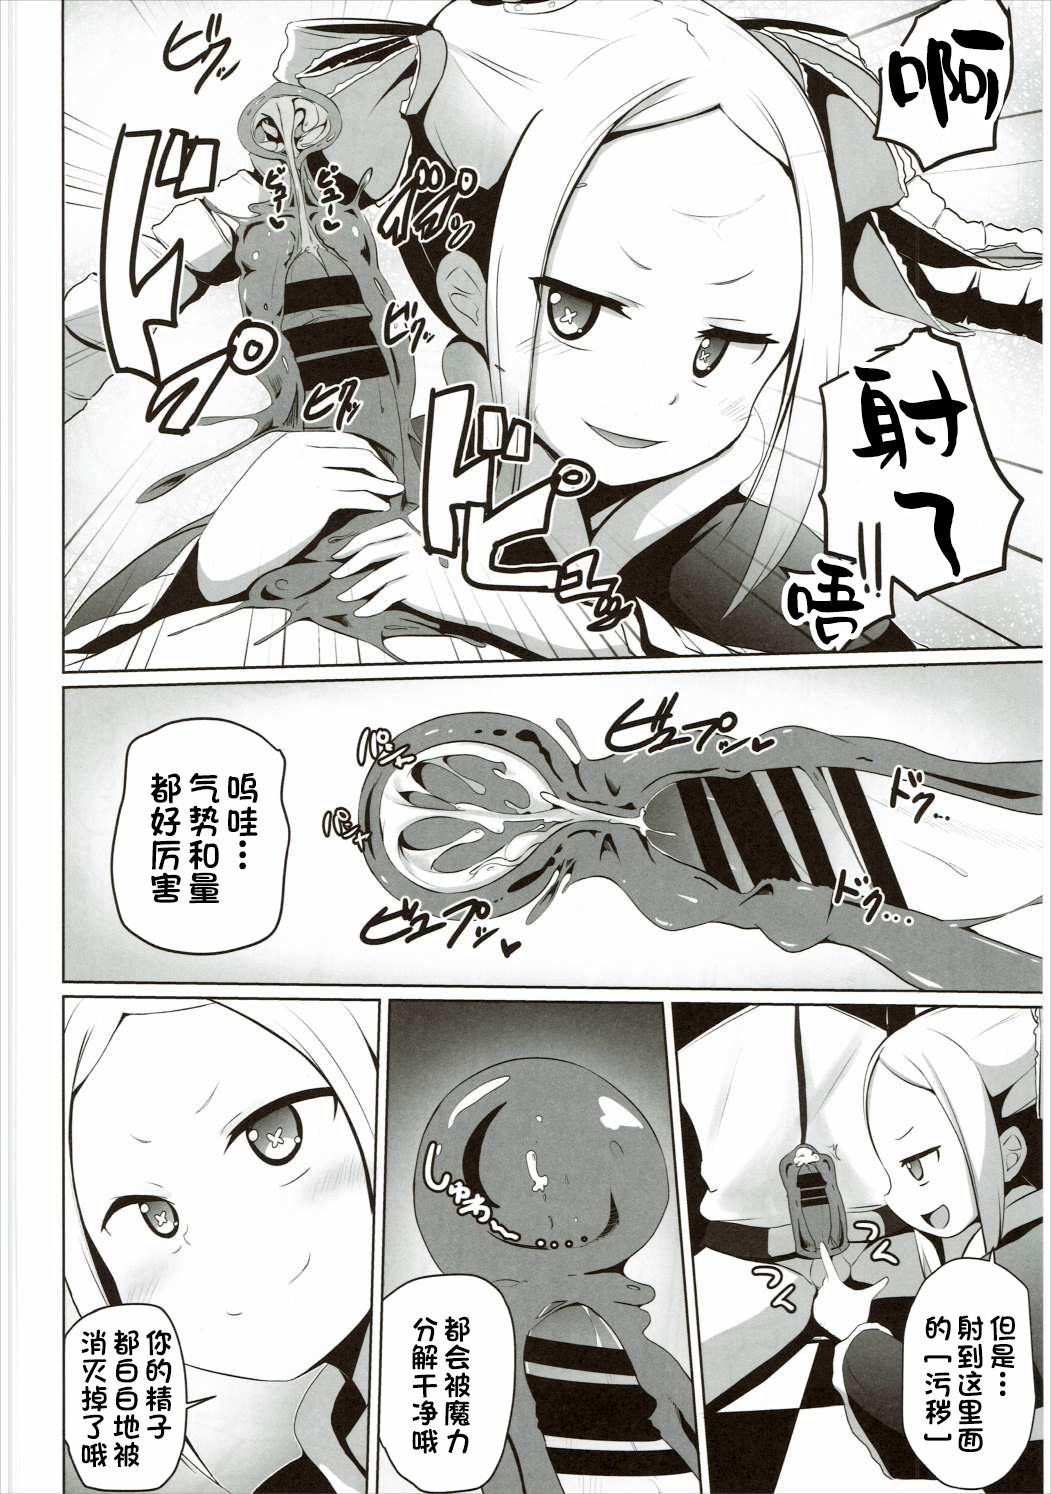 Little Omae Namaiki kashira!! - Re zero kara hajimeru isekai seikatsu Students - Page 11